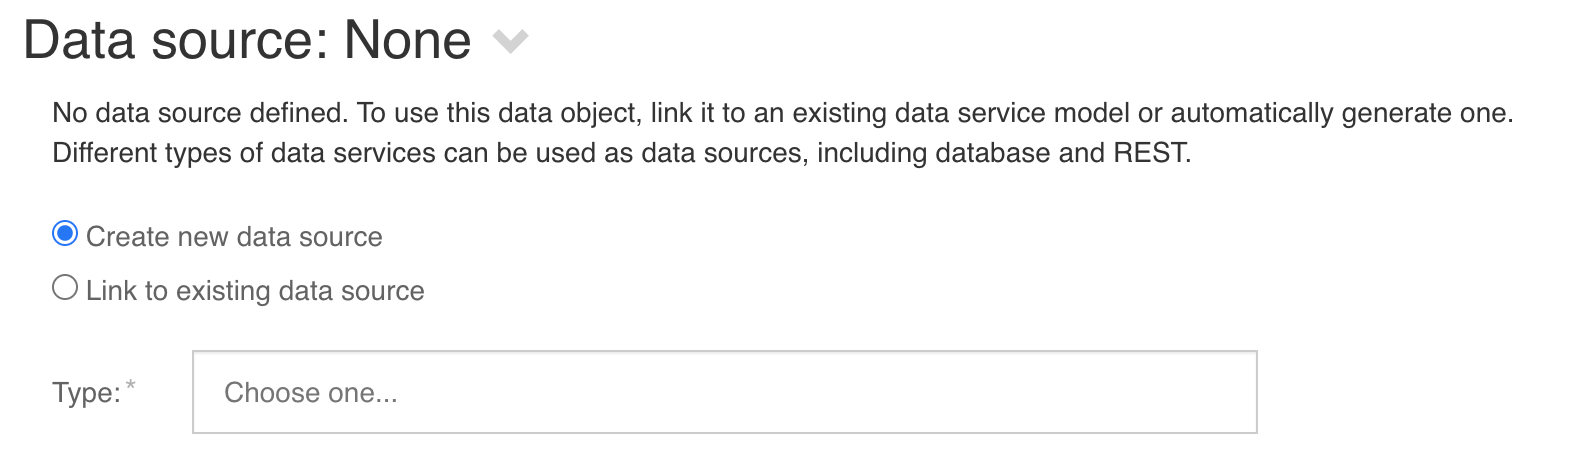 Data object data source